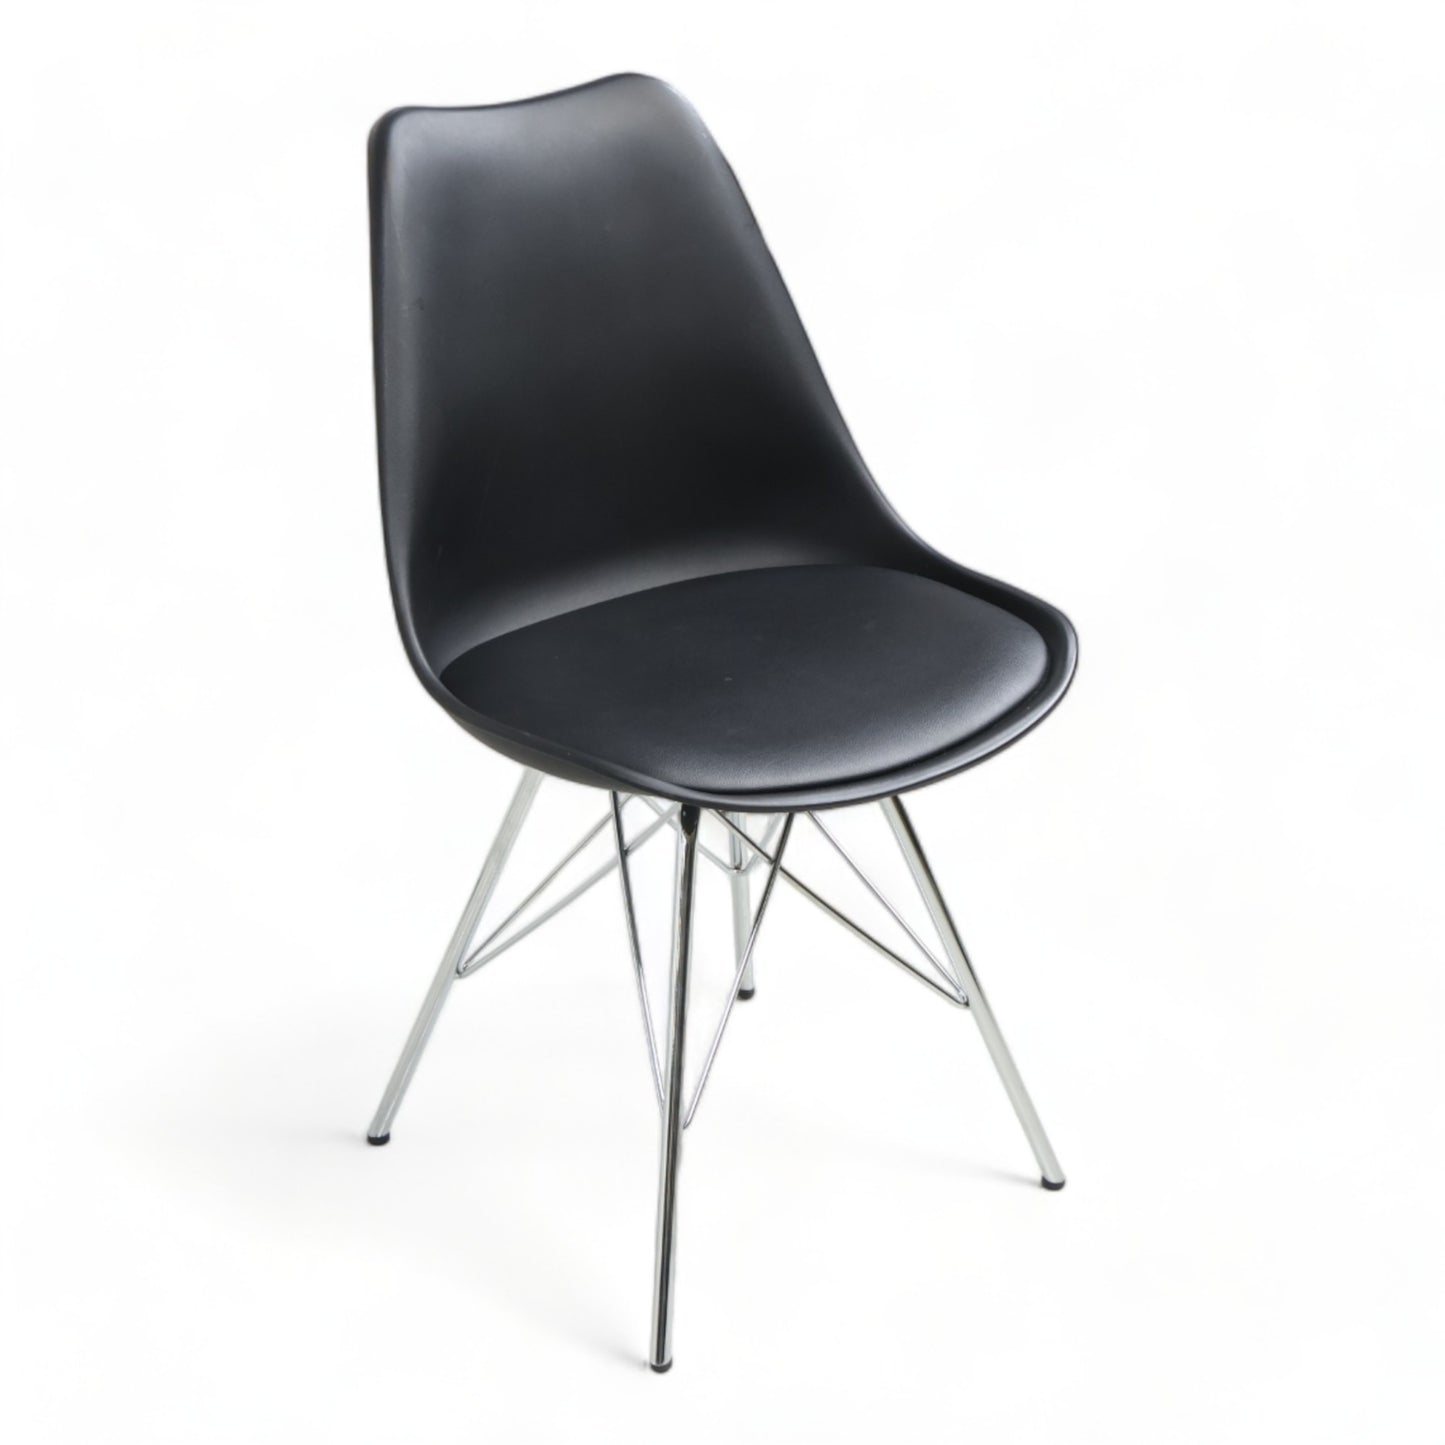 Kvalitetssikret | Moderne, sort spisestoler fra Nordic Furniture Group